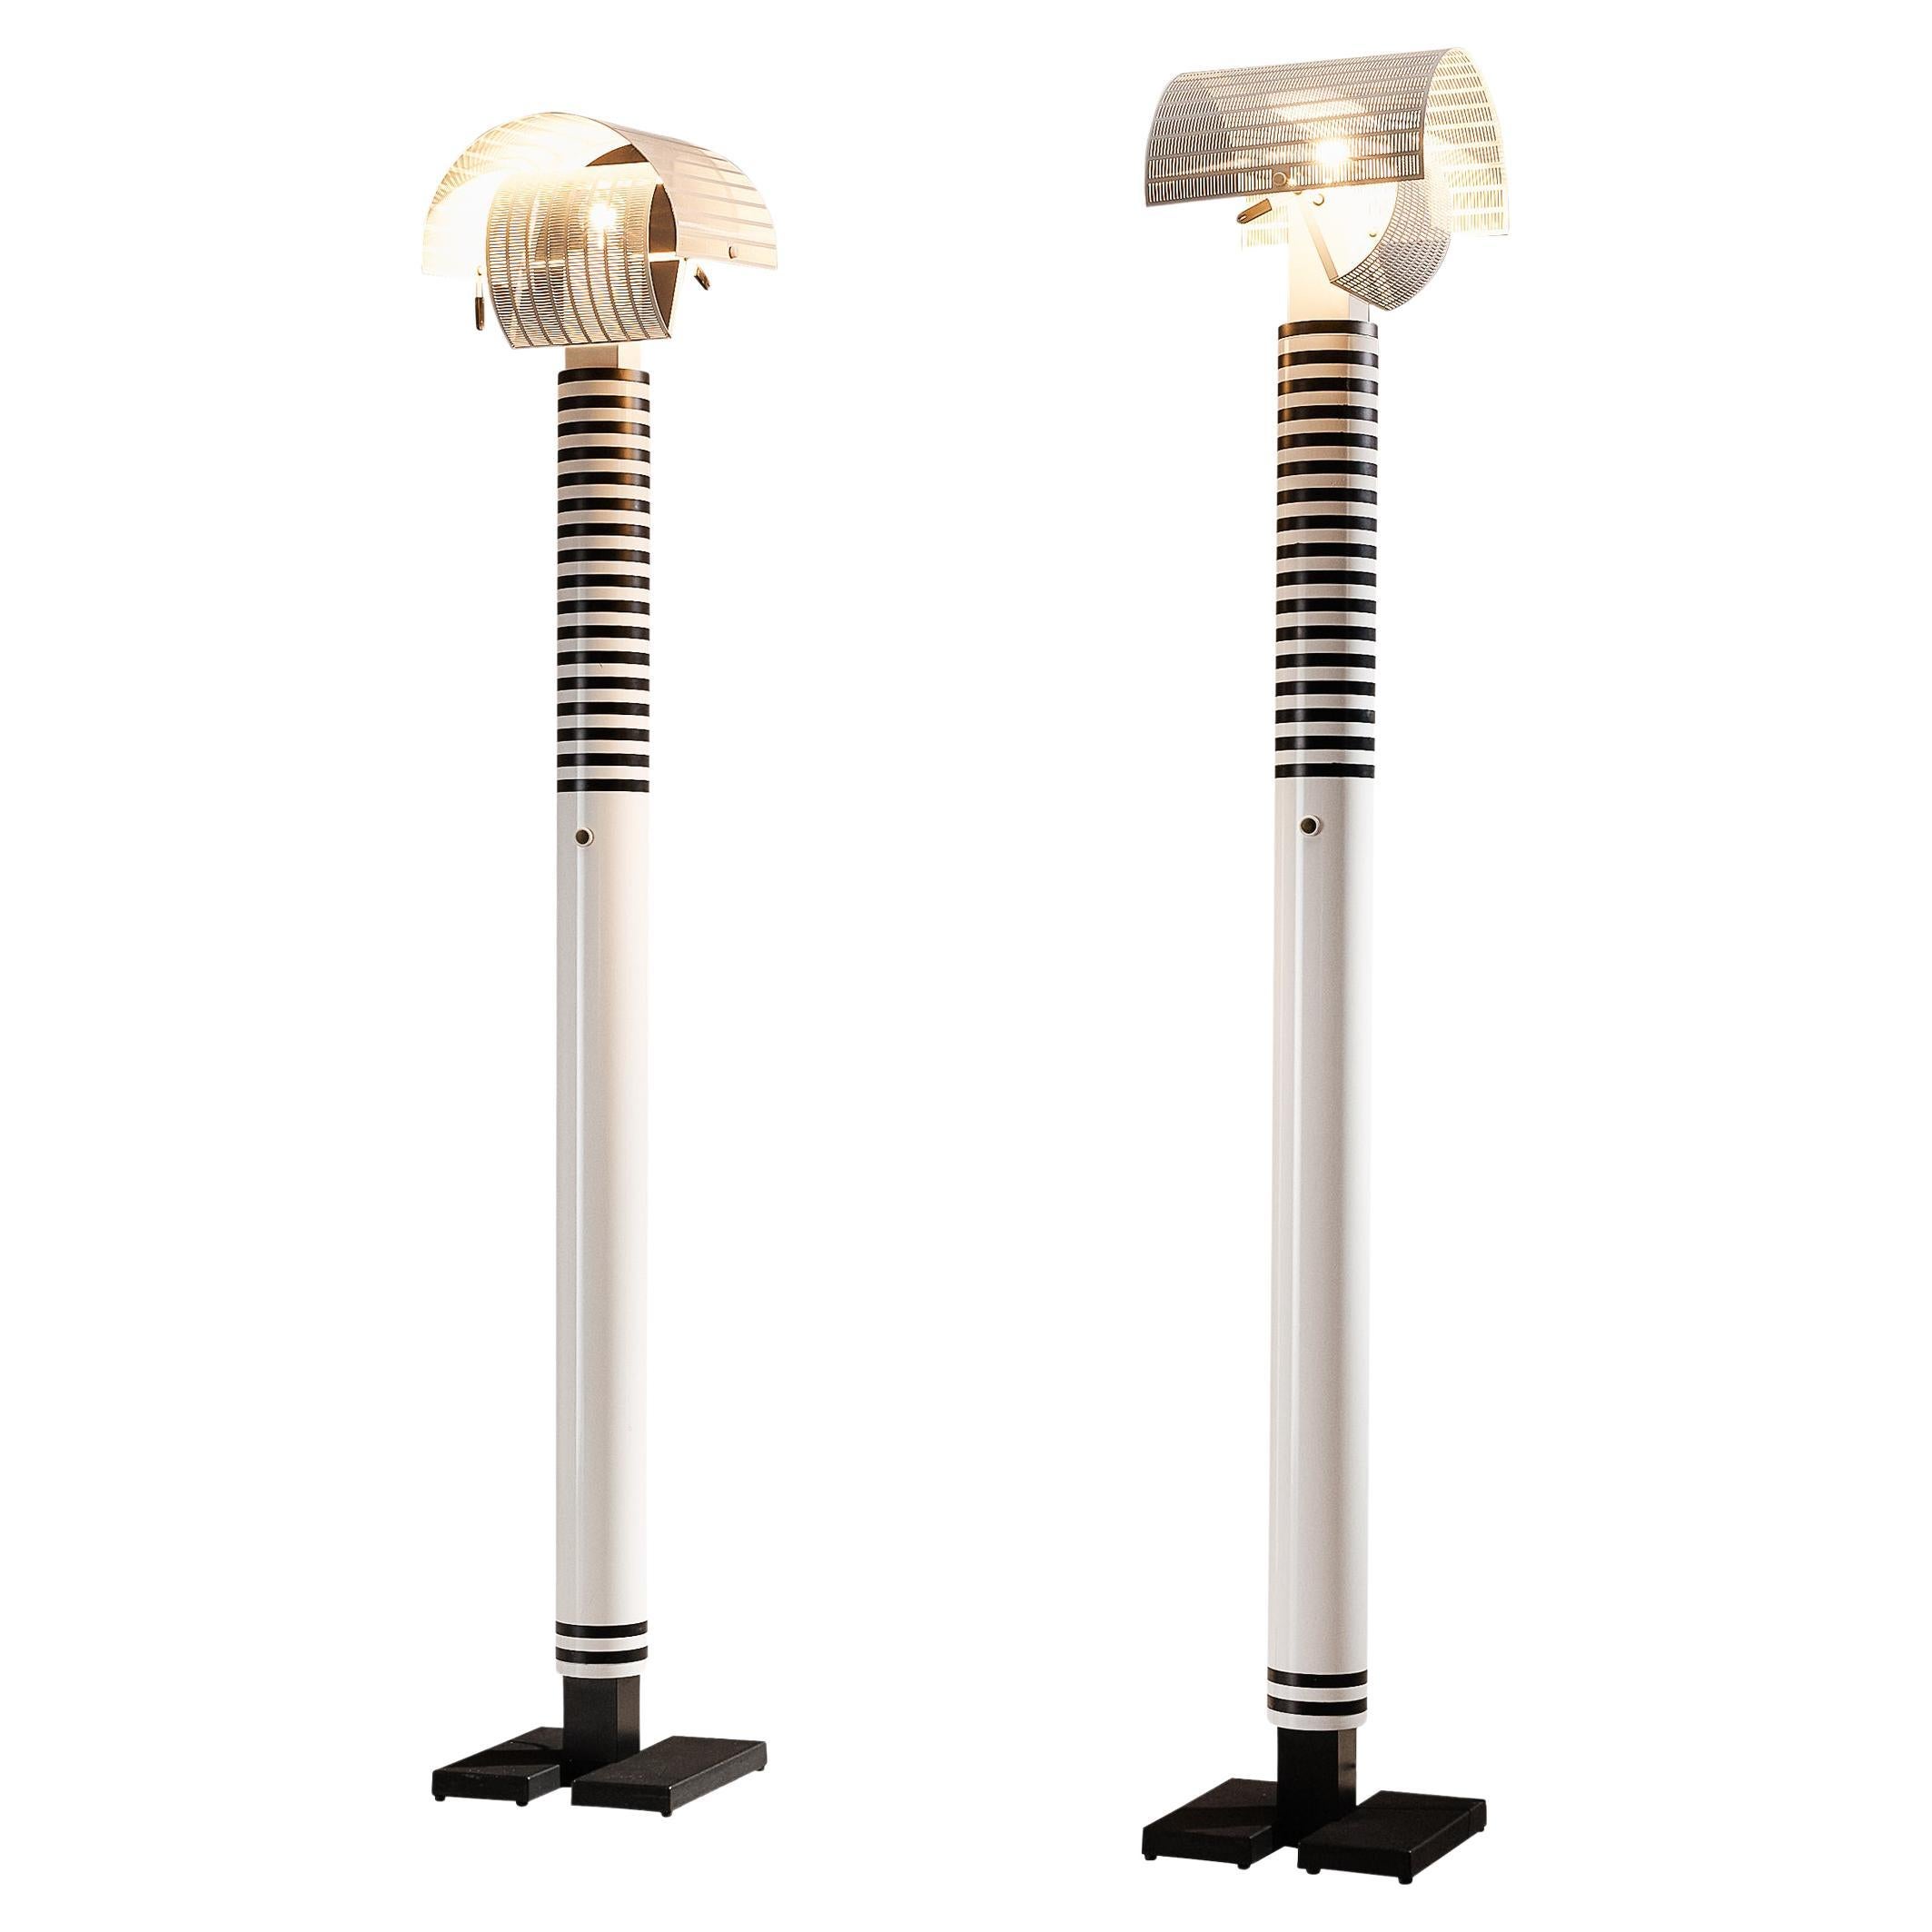 Mario Botta for Artemide ‘Shogun’ Floor Lamps  For Sale